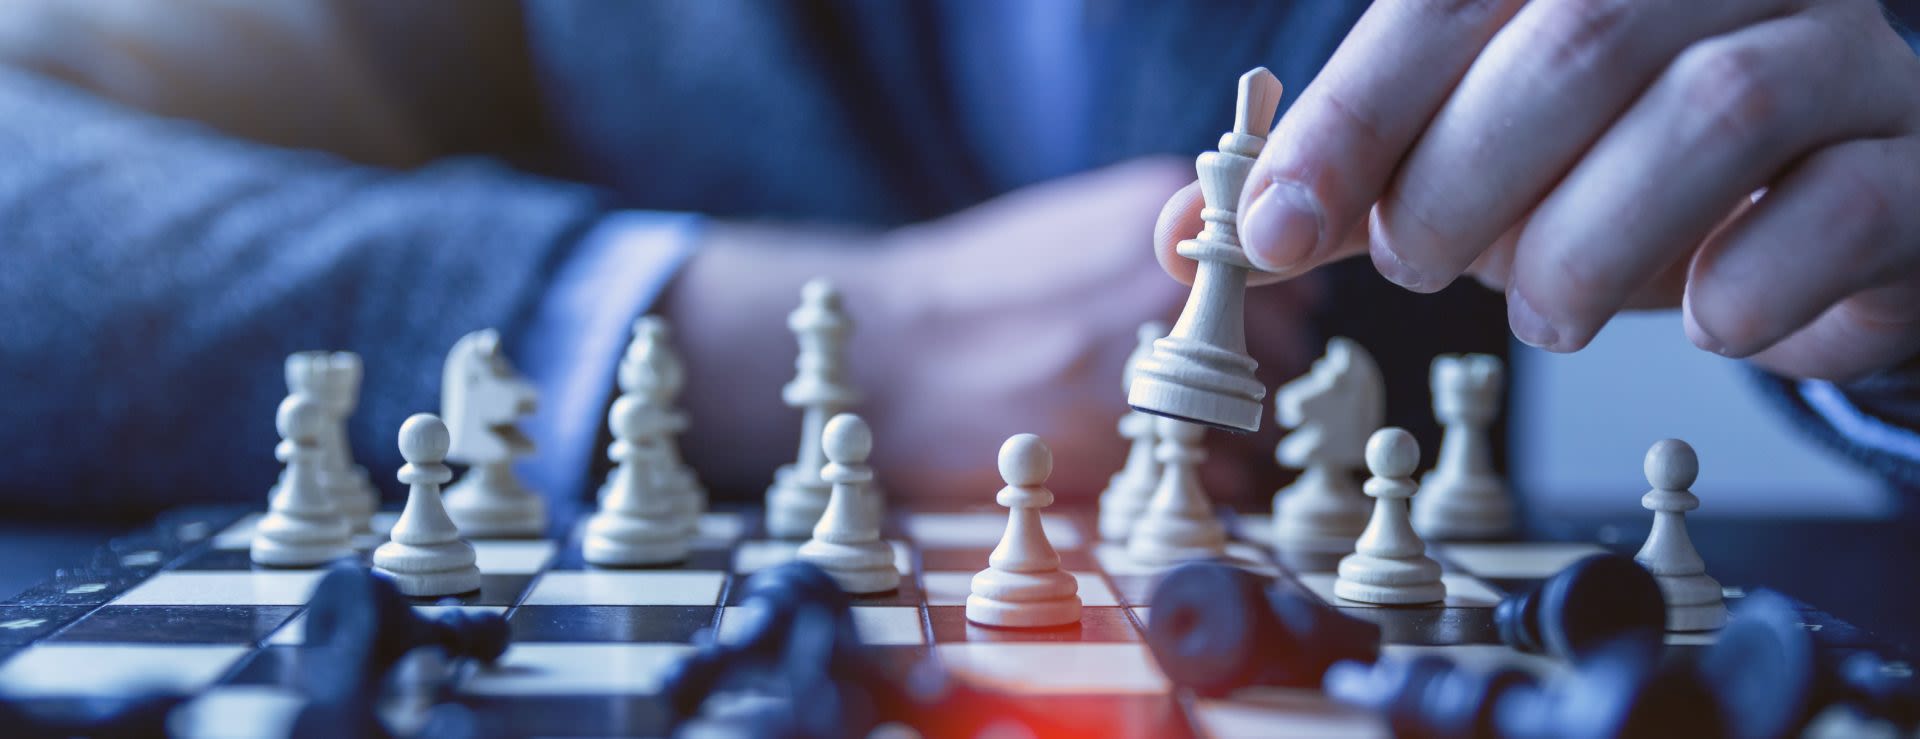 שחמט – מלחמה ואסטרטגיה על הלוח ובמציאות